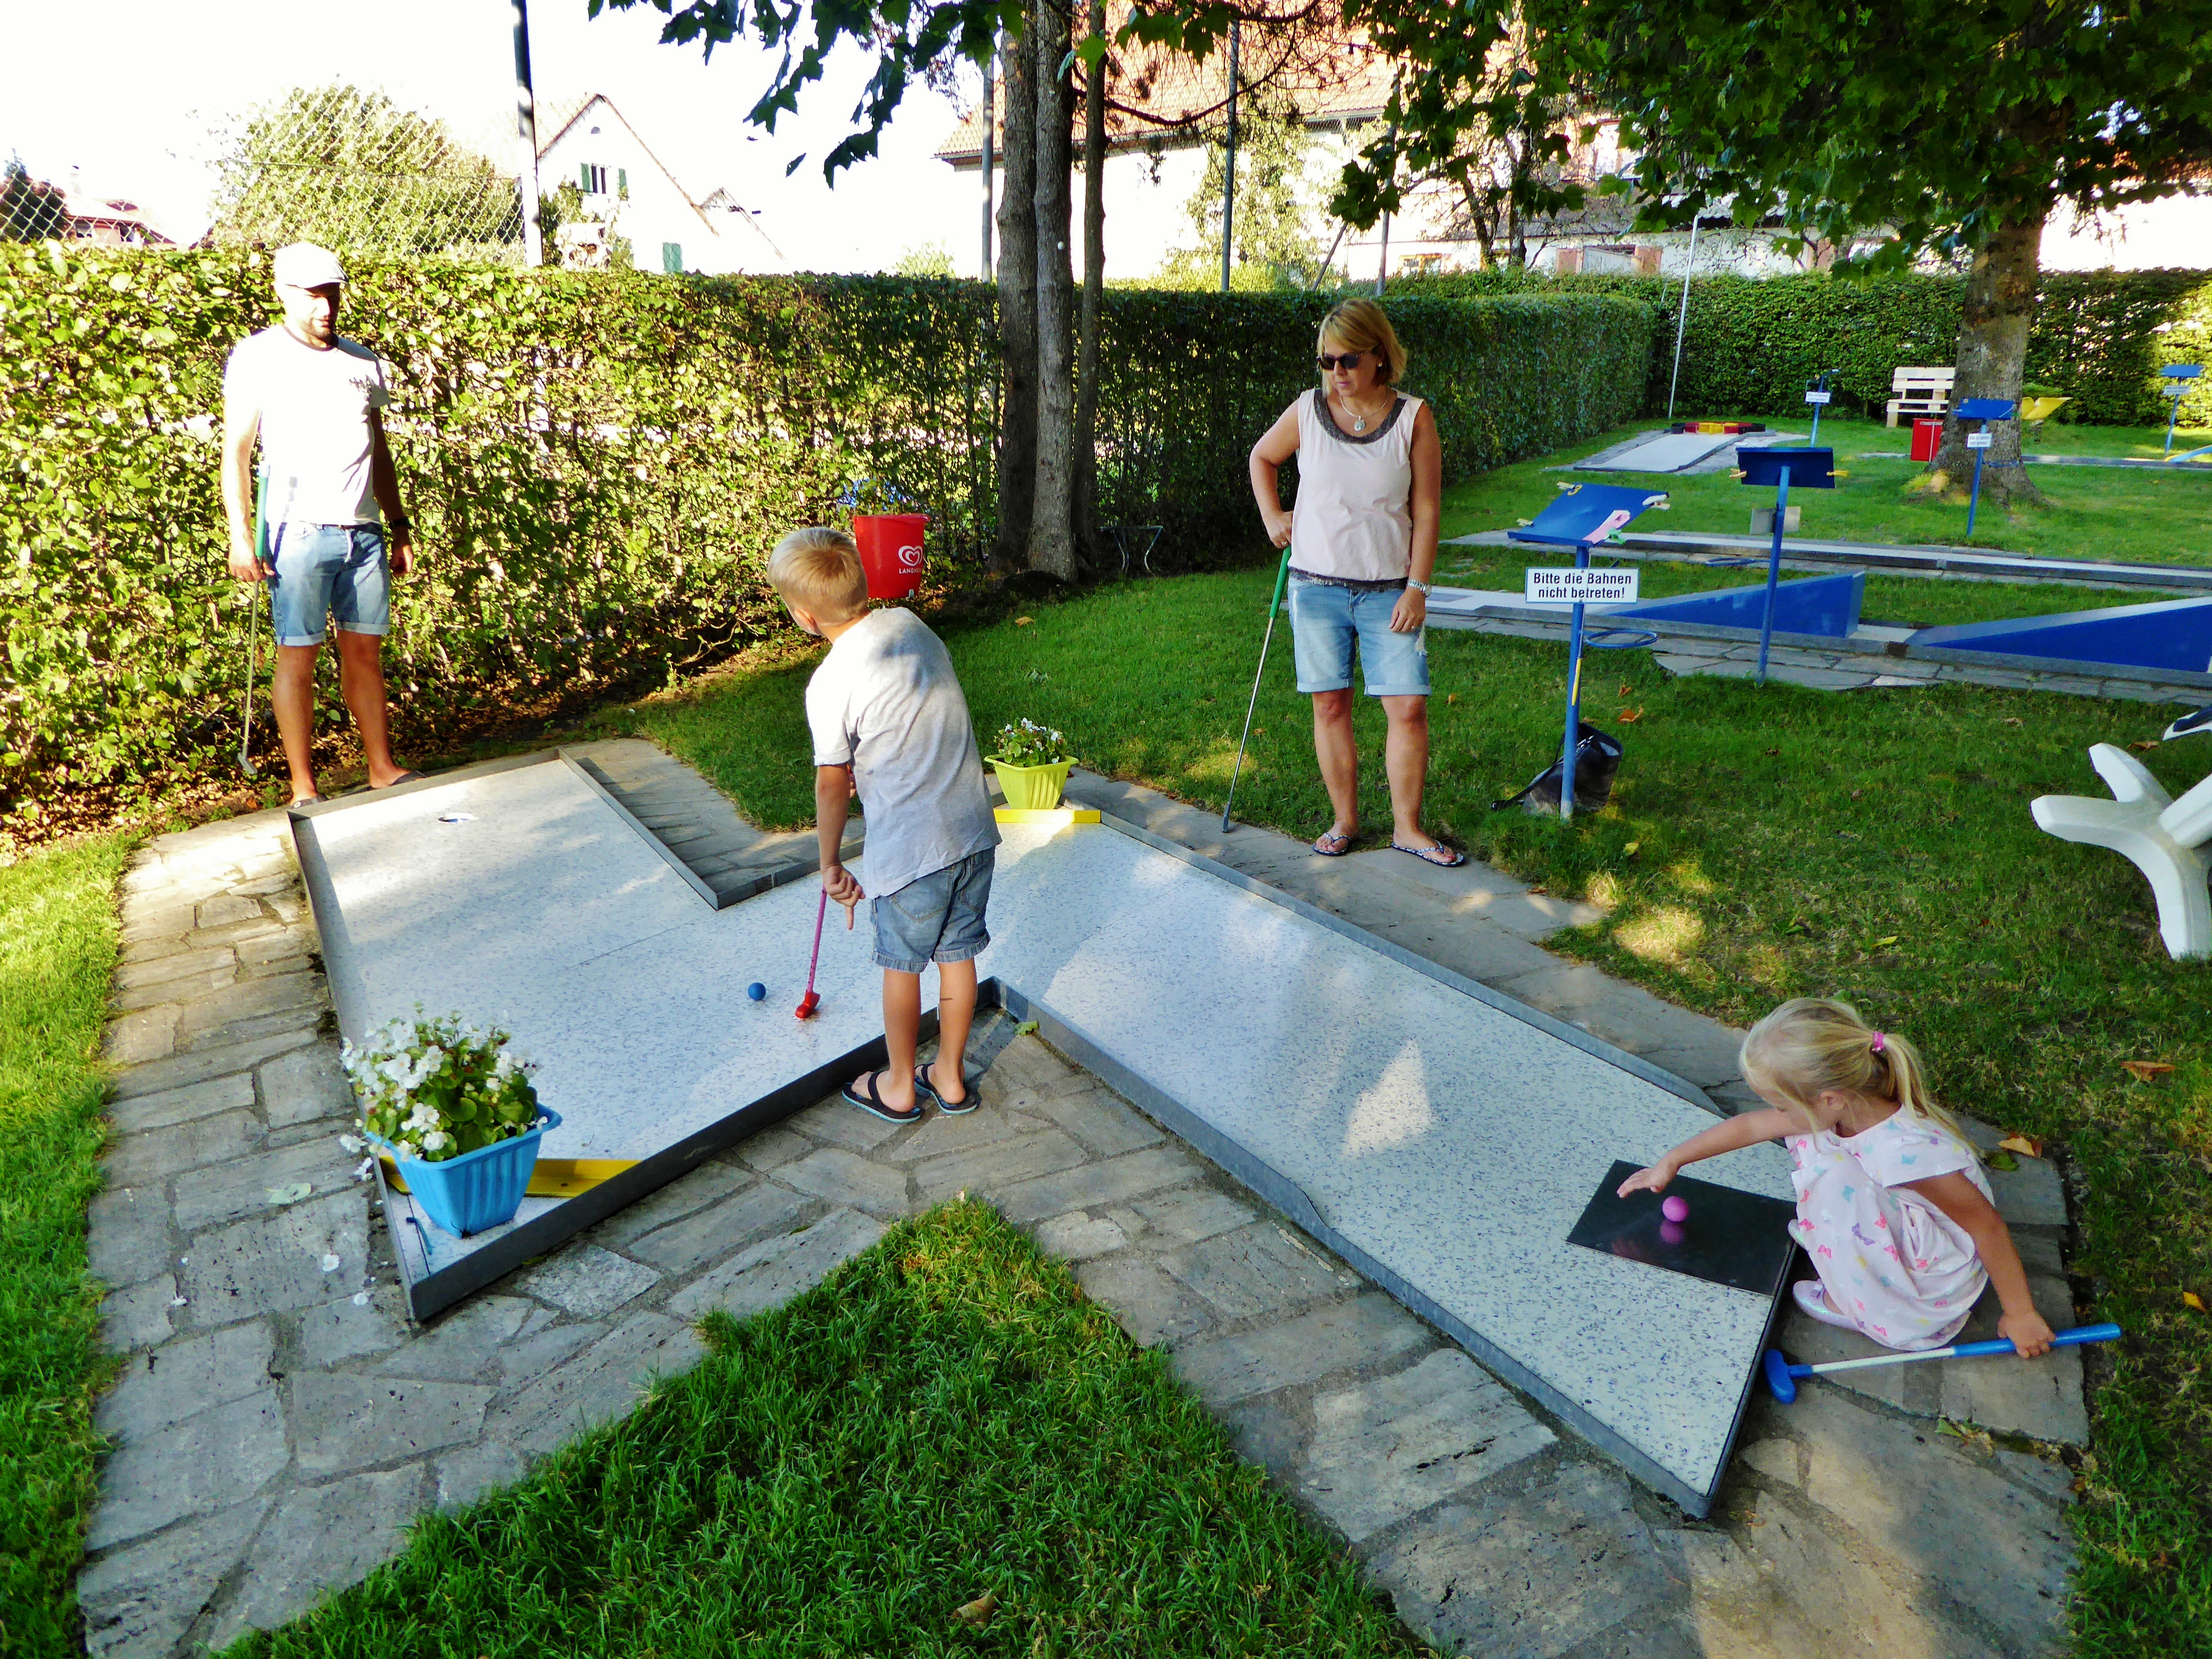  Familien spielt auf einer Minigolfbahn - das Bild wird mit Klick vergrößert 